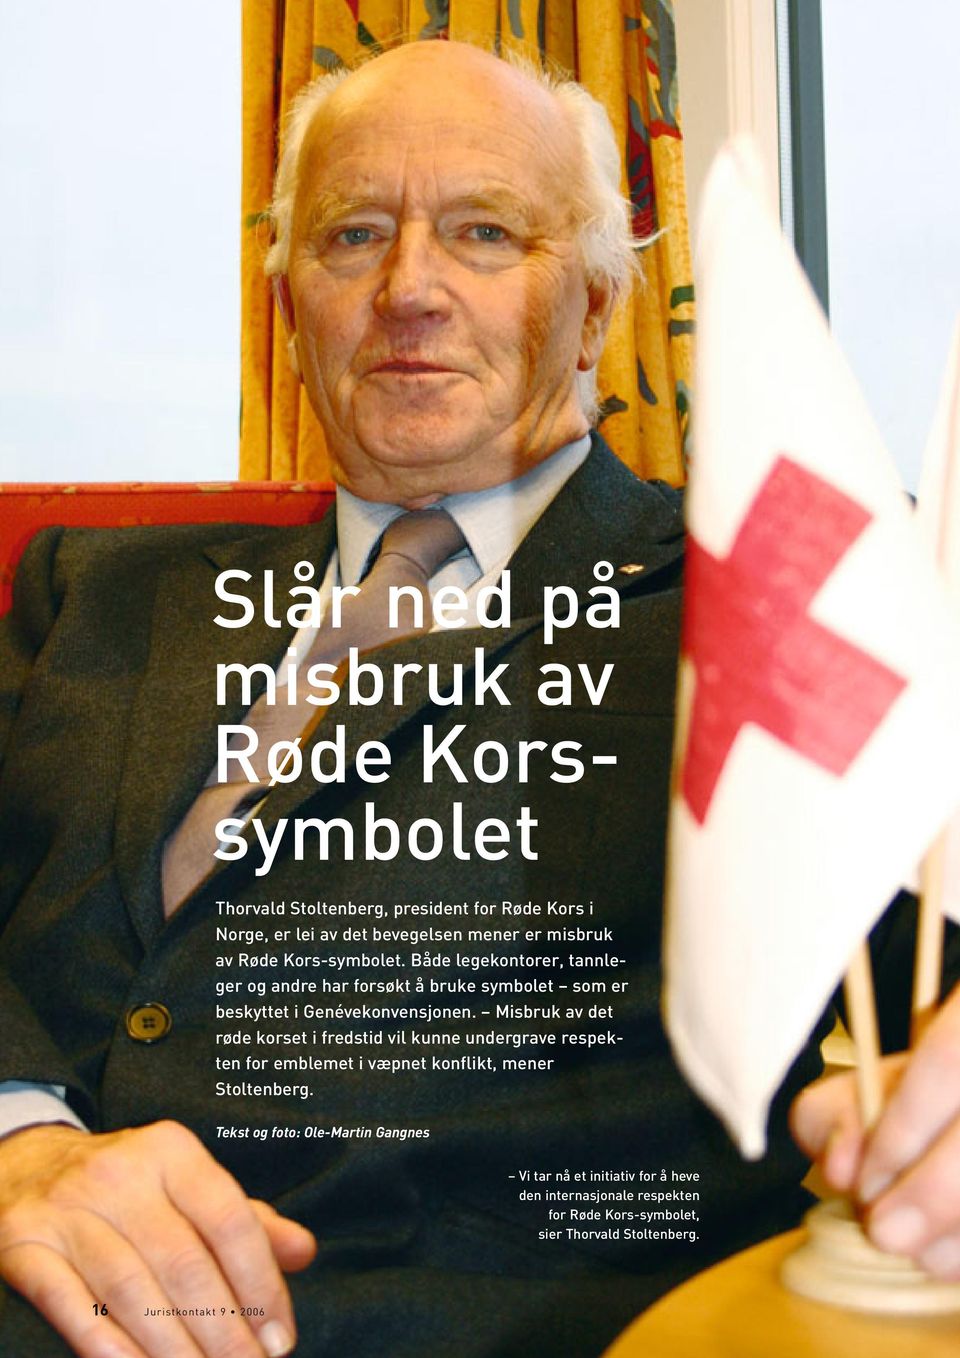 Misbruk av det røde korset i fredstid vil kunne undergrave respekten for emblemet i væpnet konflikt, mener Stoltenberg.